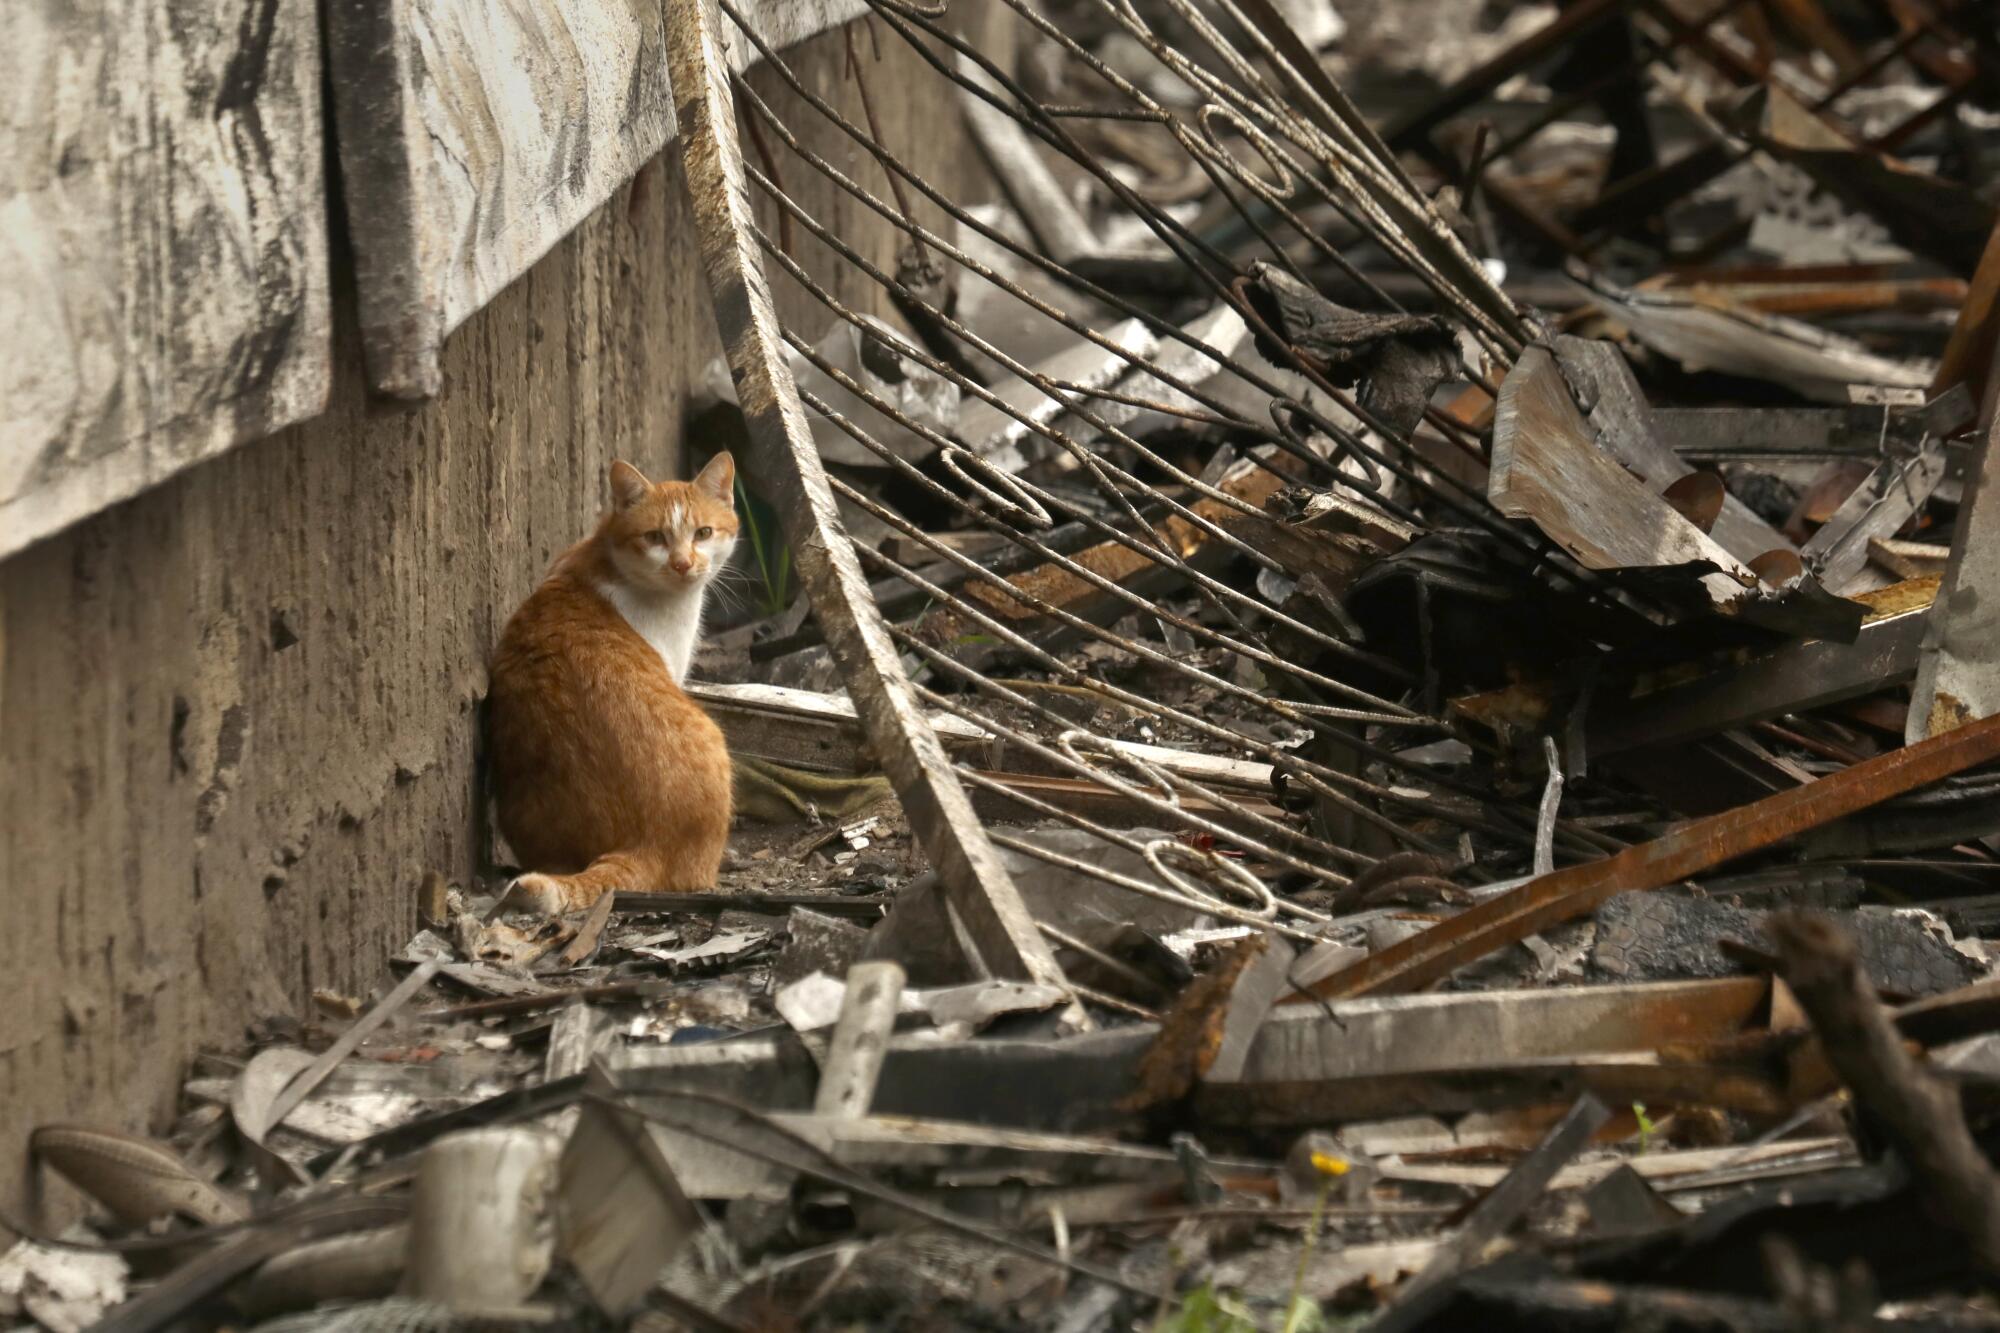 Cat sitting amid debris